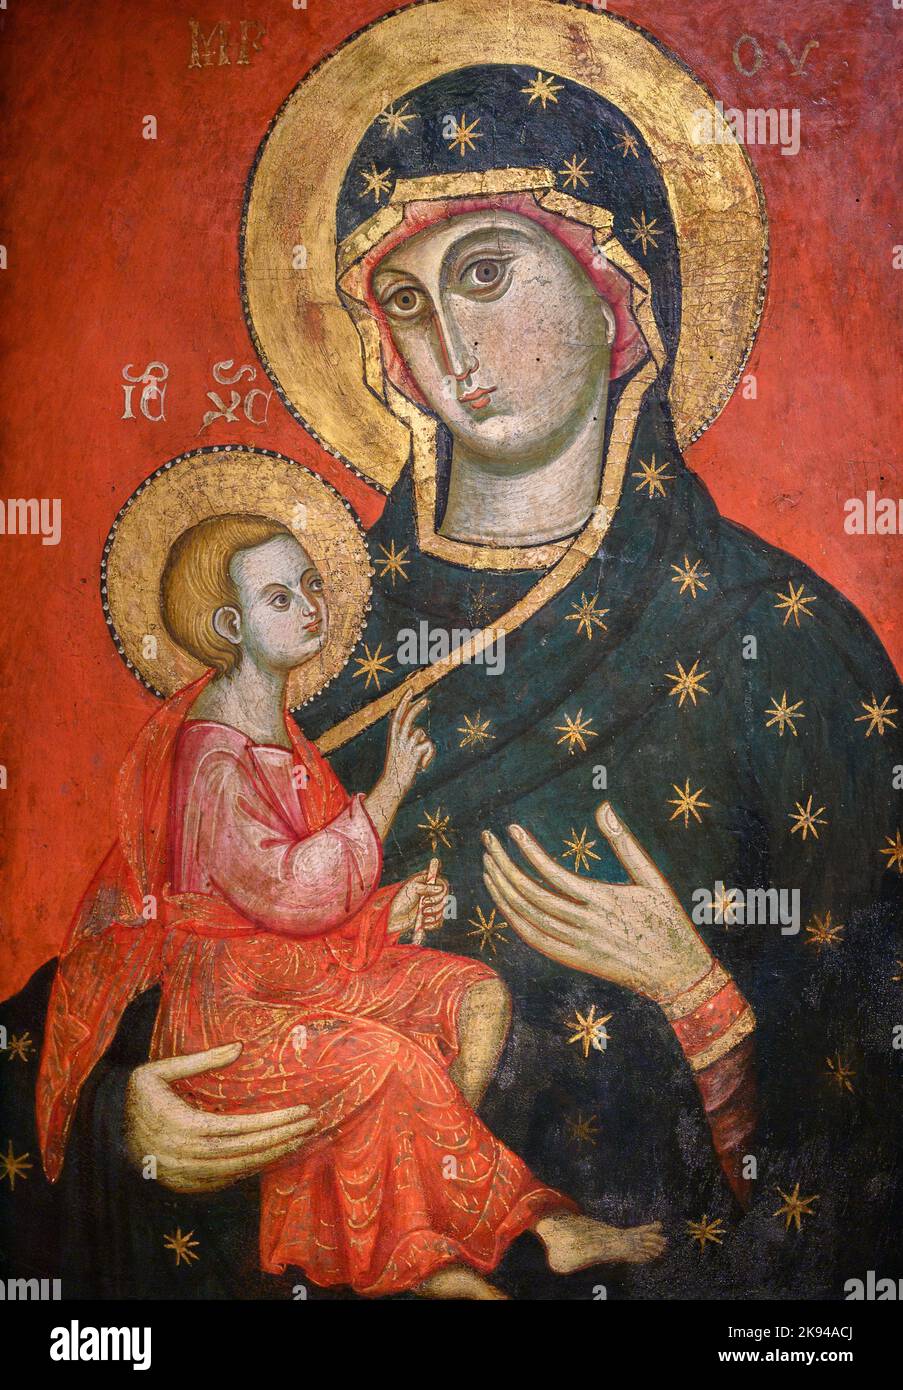 Vergine e Bambino di un pittore veneziano-bizantino. Fine del 13th ° secolo o inizio del 14th ° secolo. Tempera su legno. Foto Stock